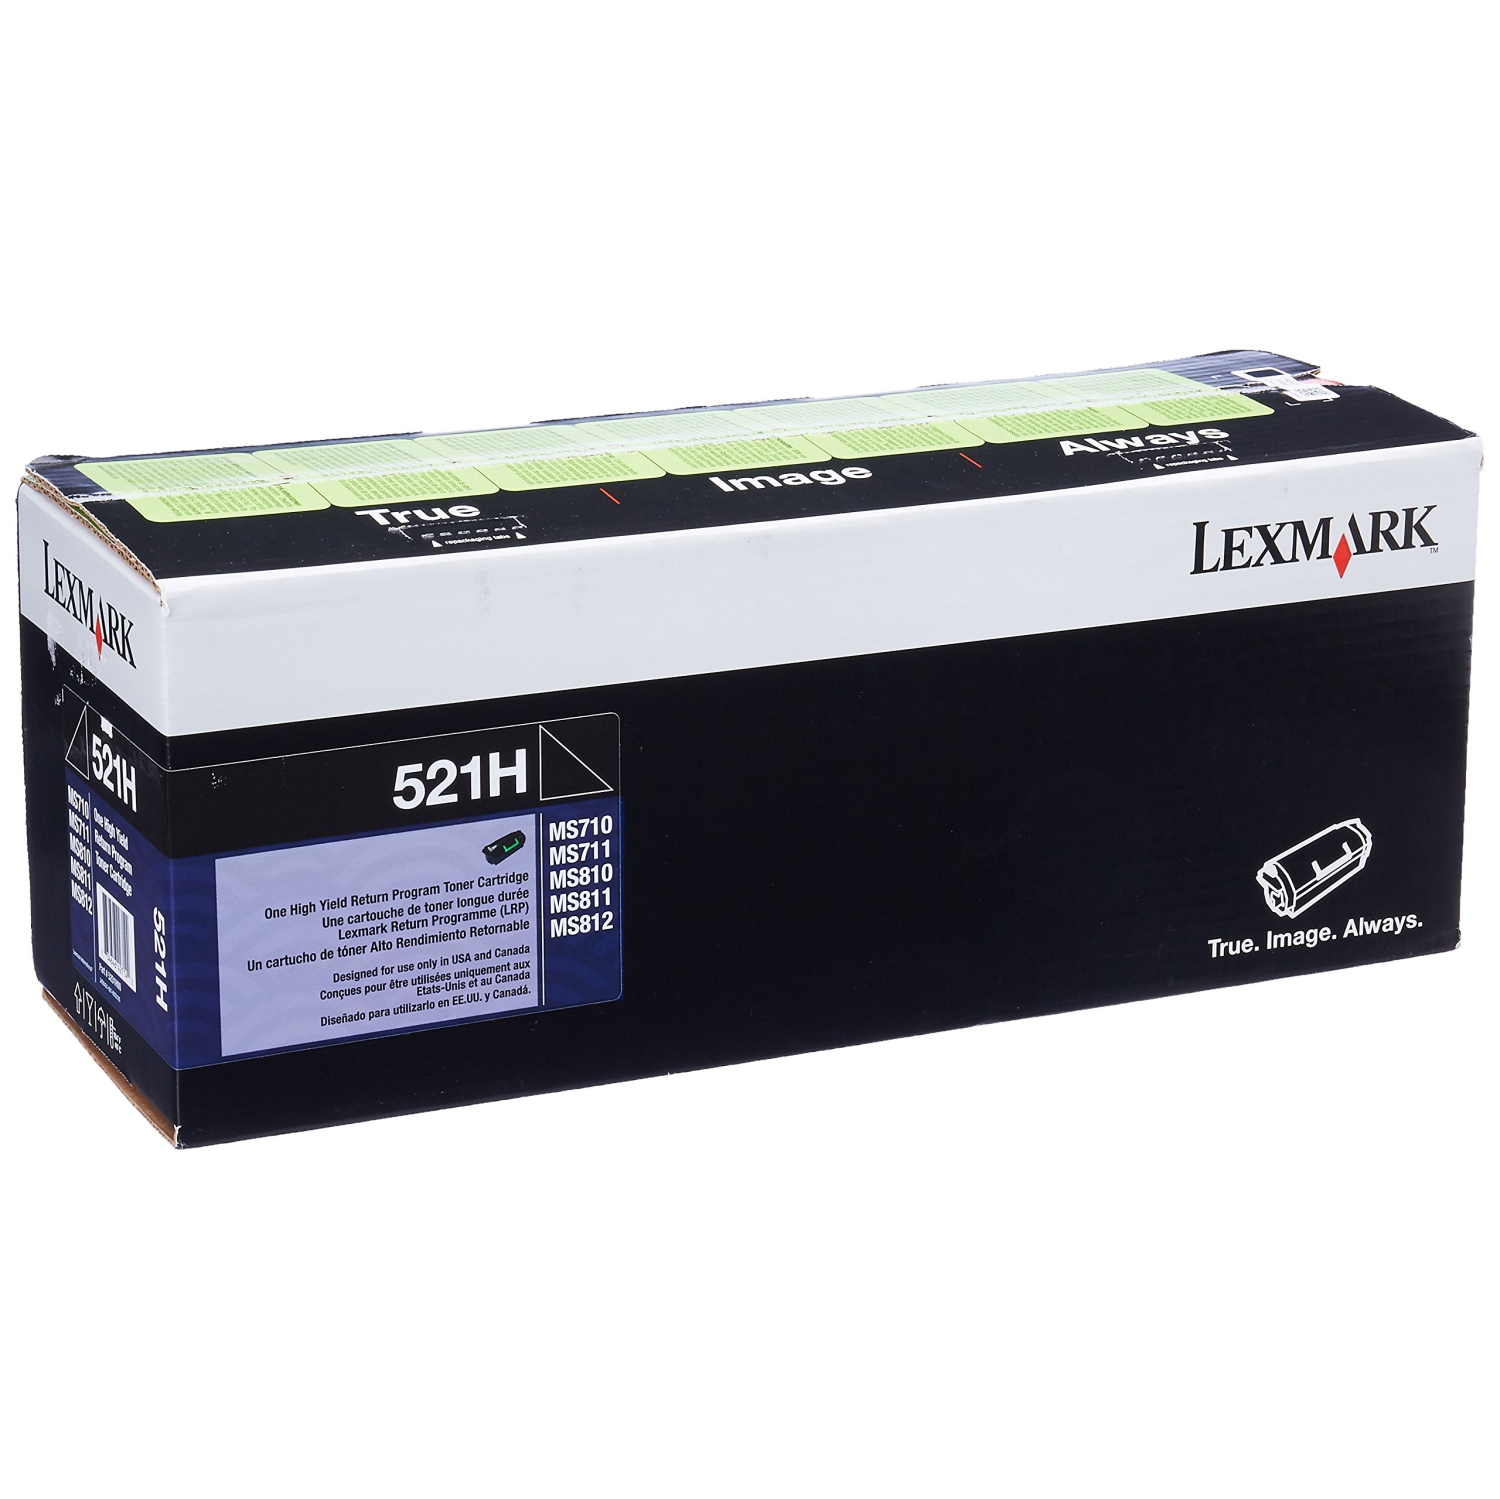 Lexmark 36S0900 Wireless Monochrome Printer with Scanner, Copier & Fax